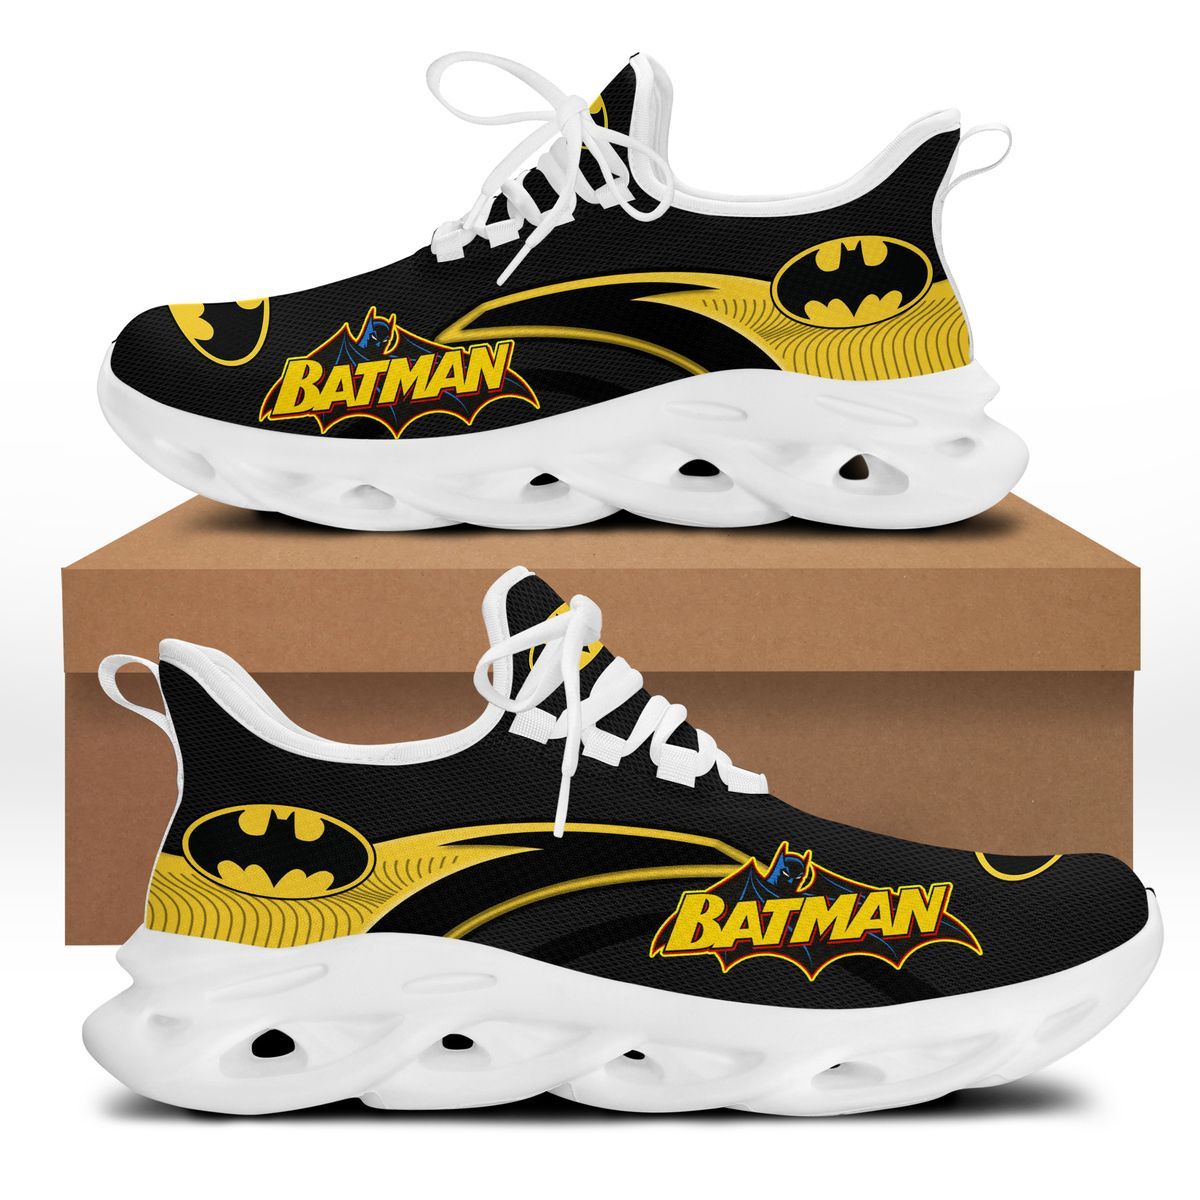 Batman Clunky Max soul shoes